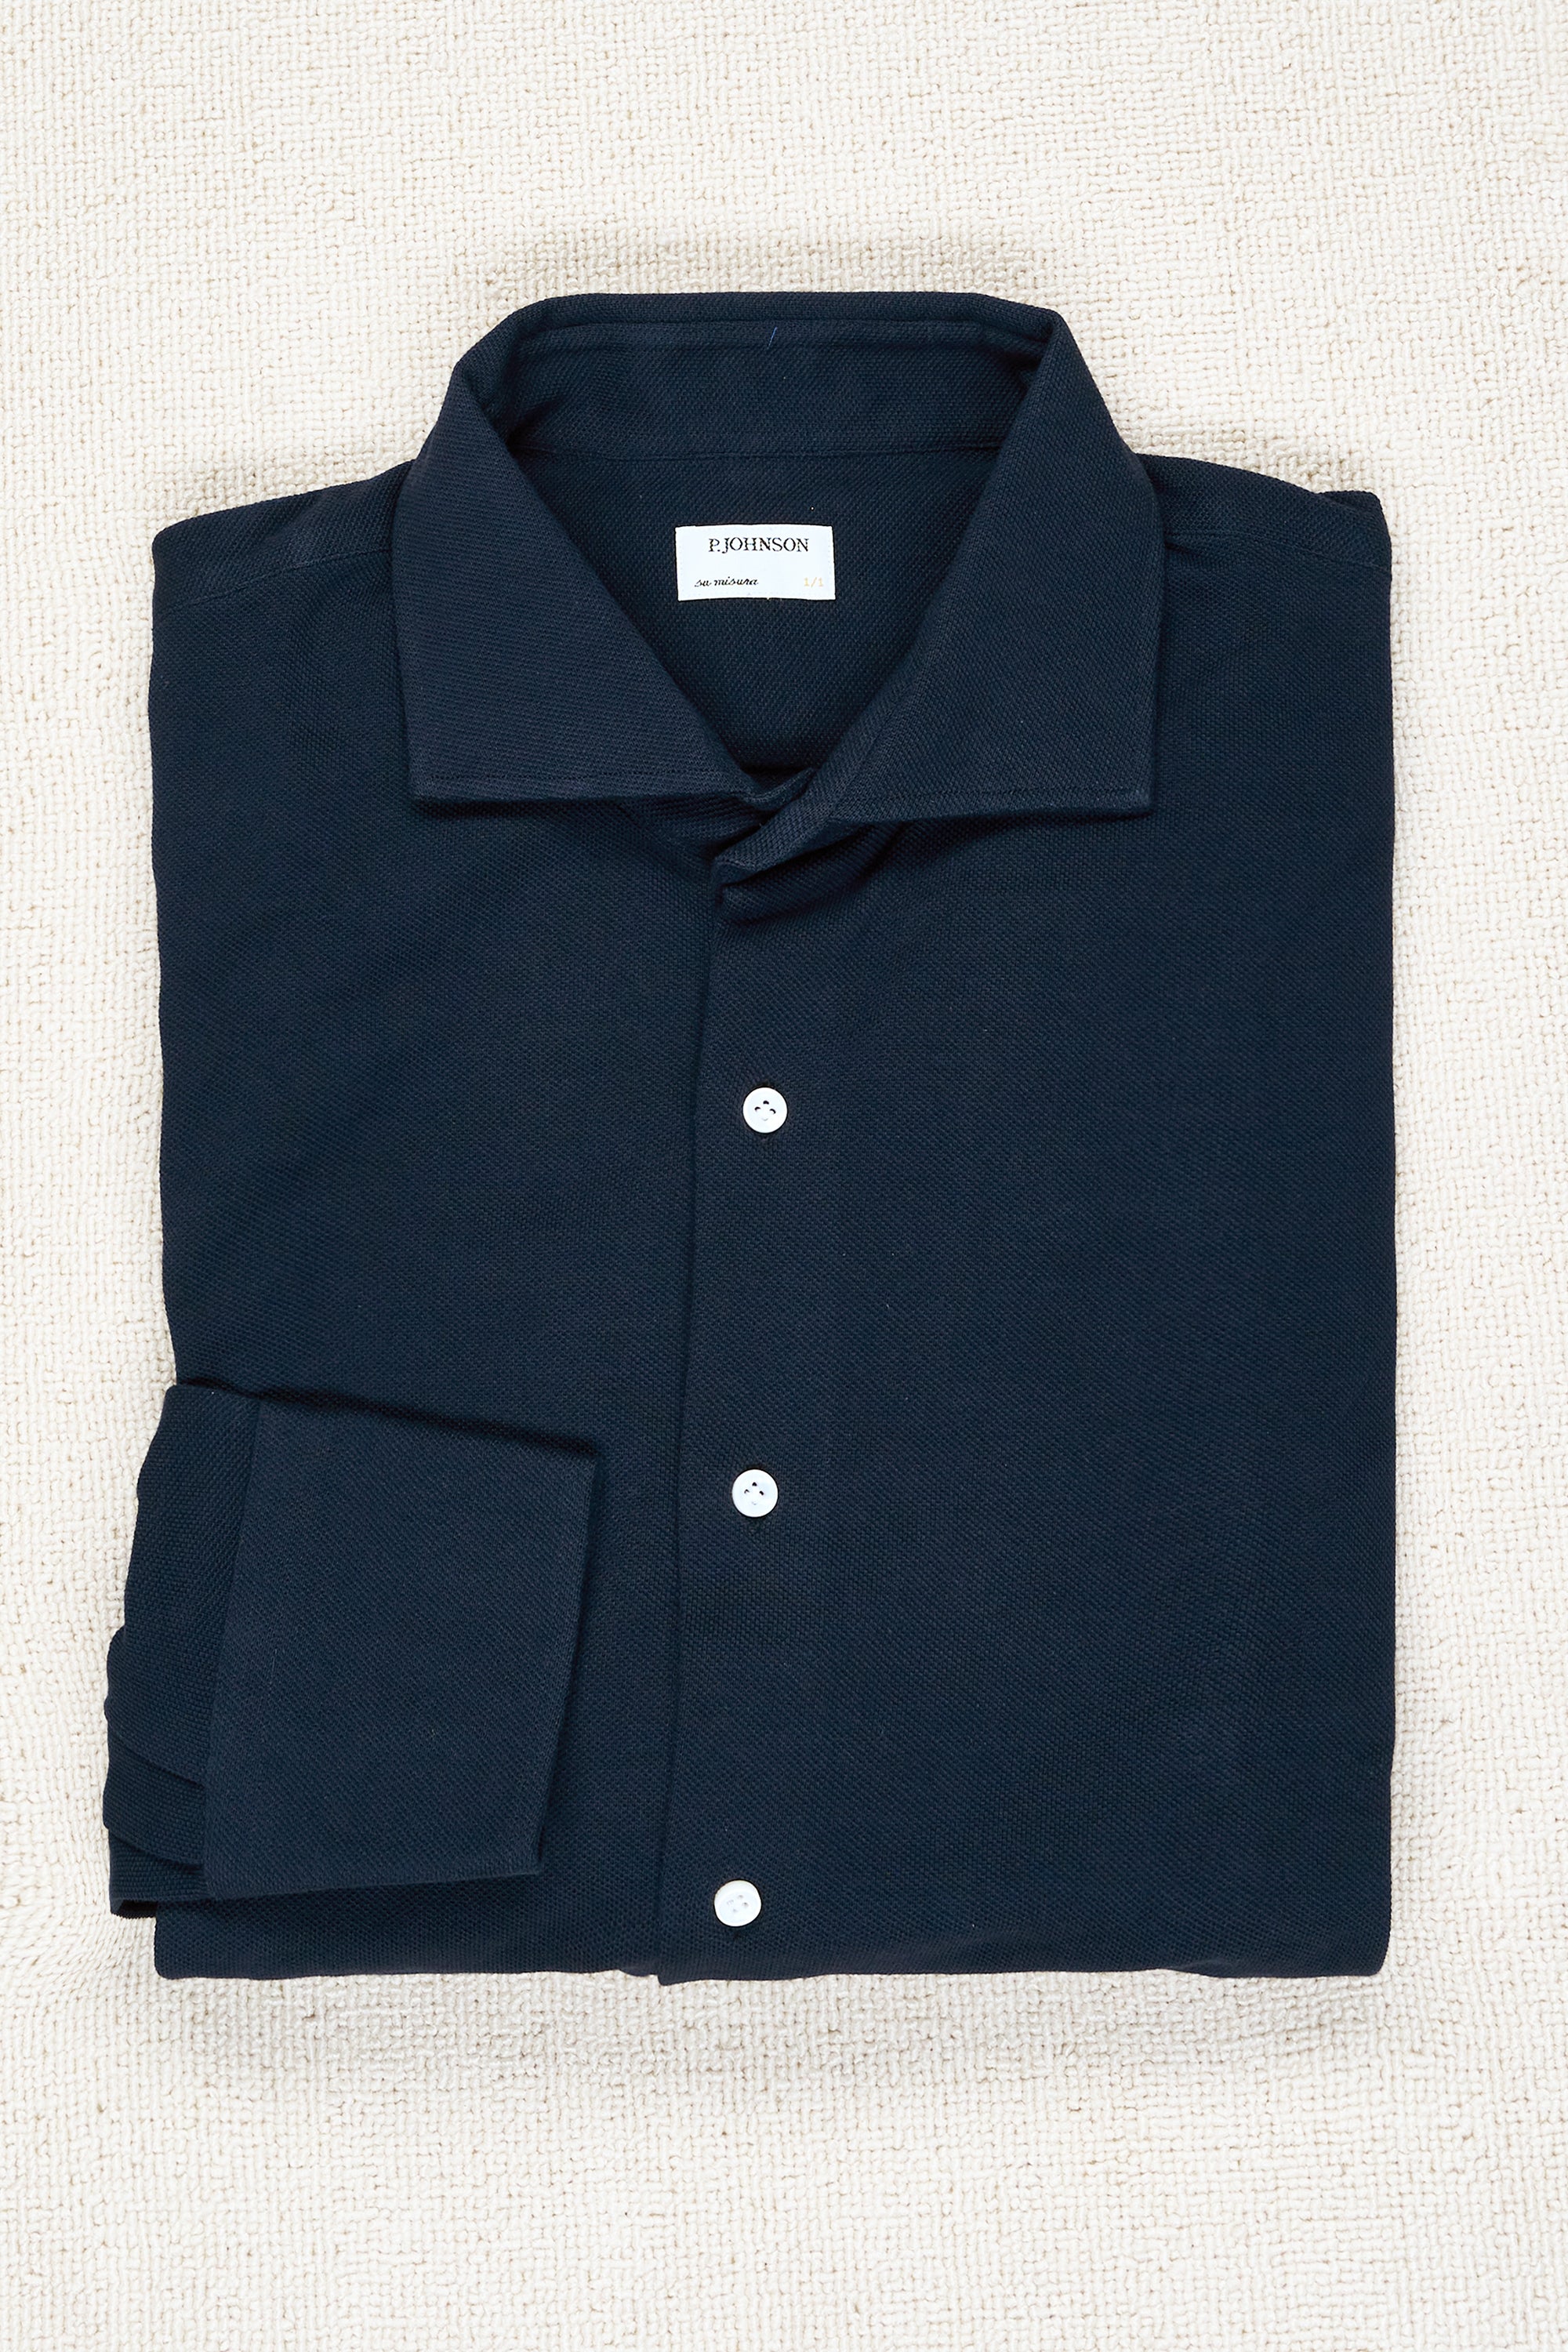 P. Johnson Navy Cotton Pique Spread Collar Shirt